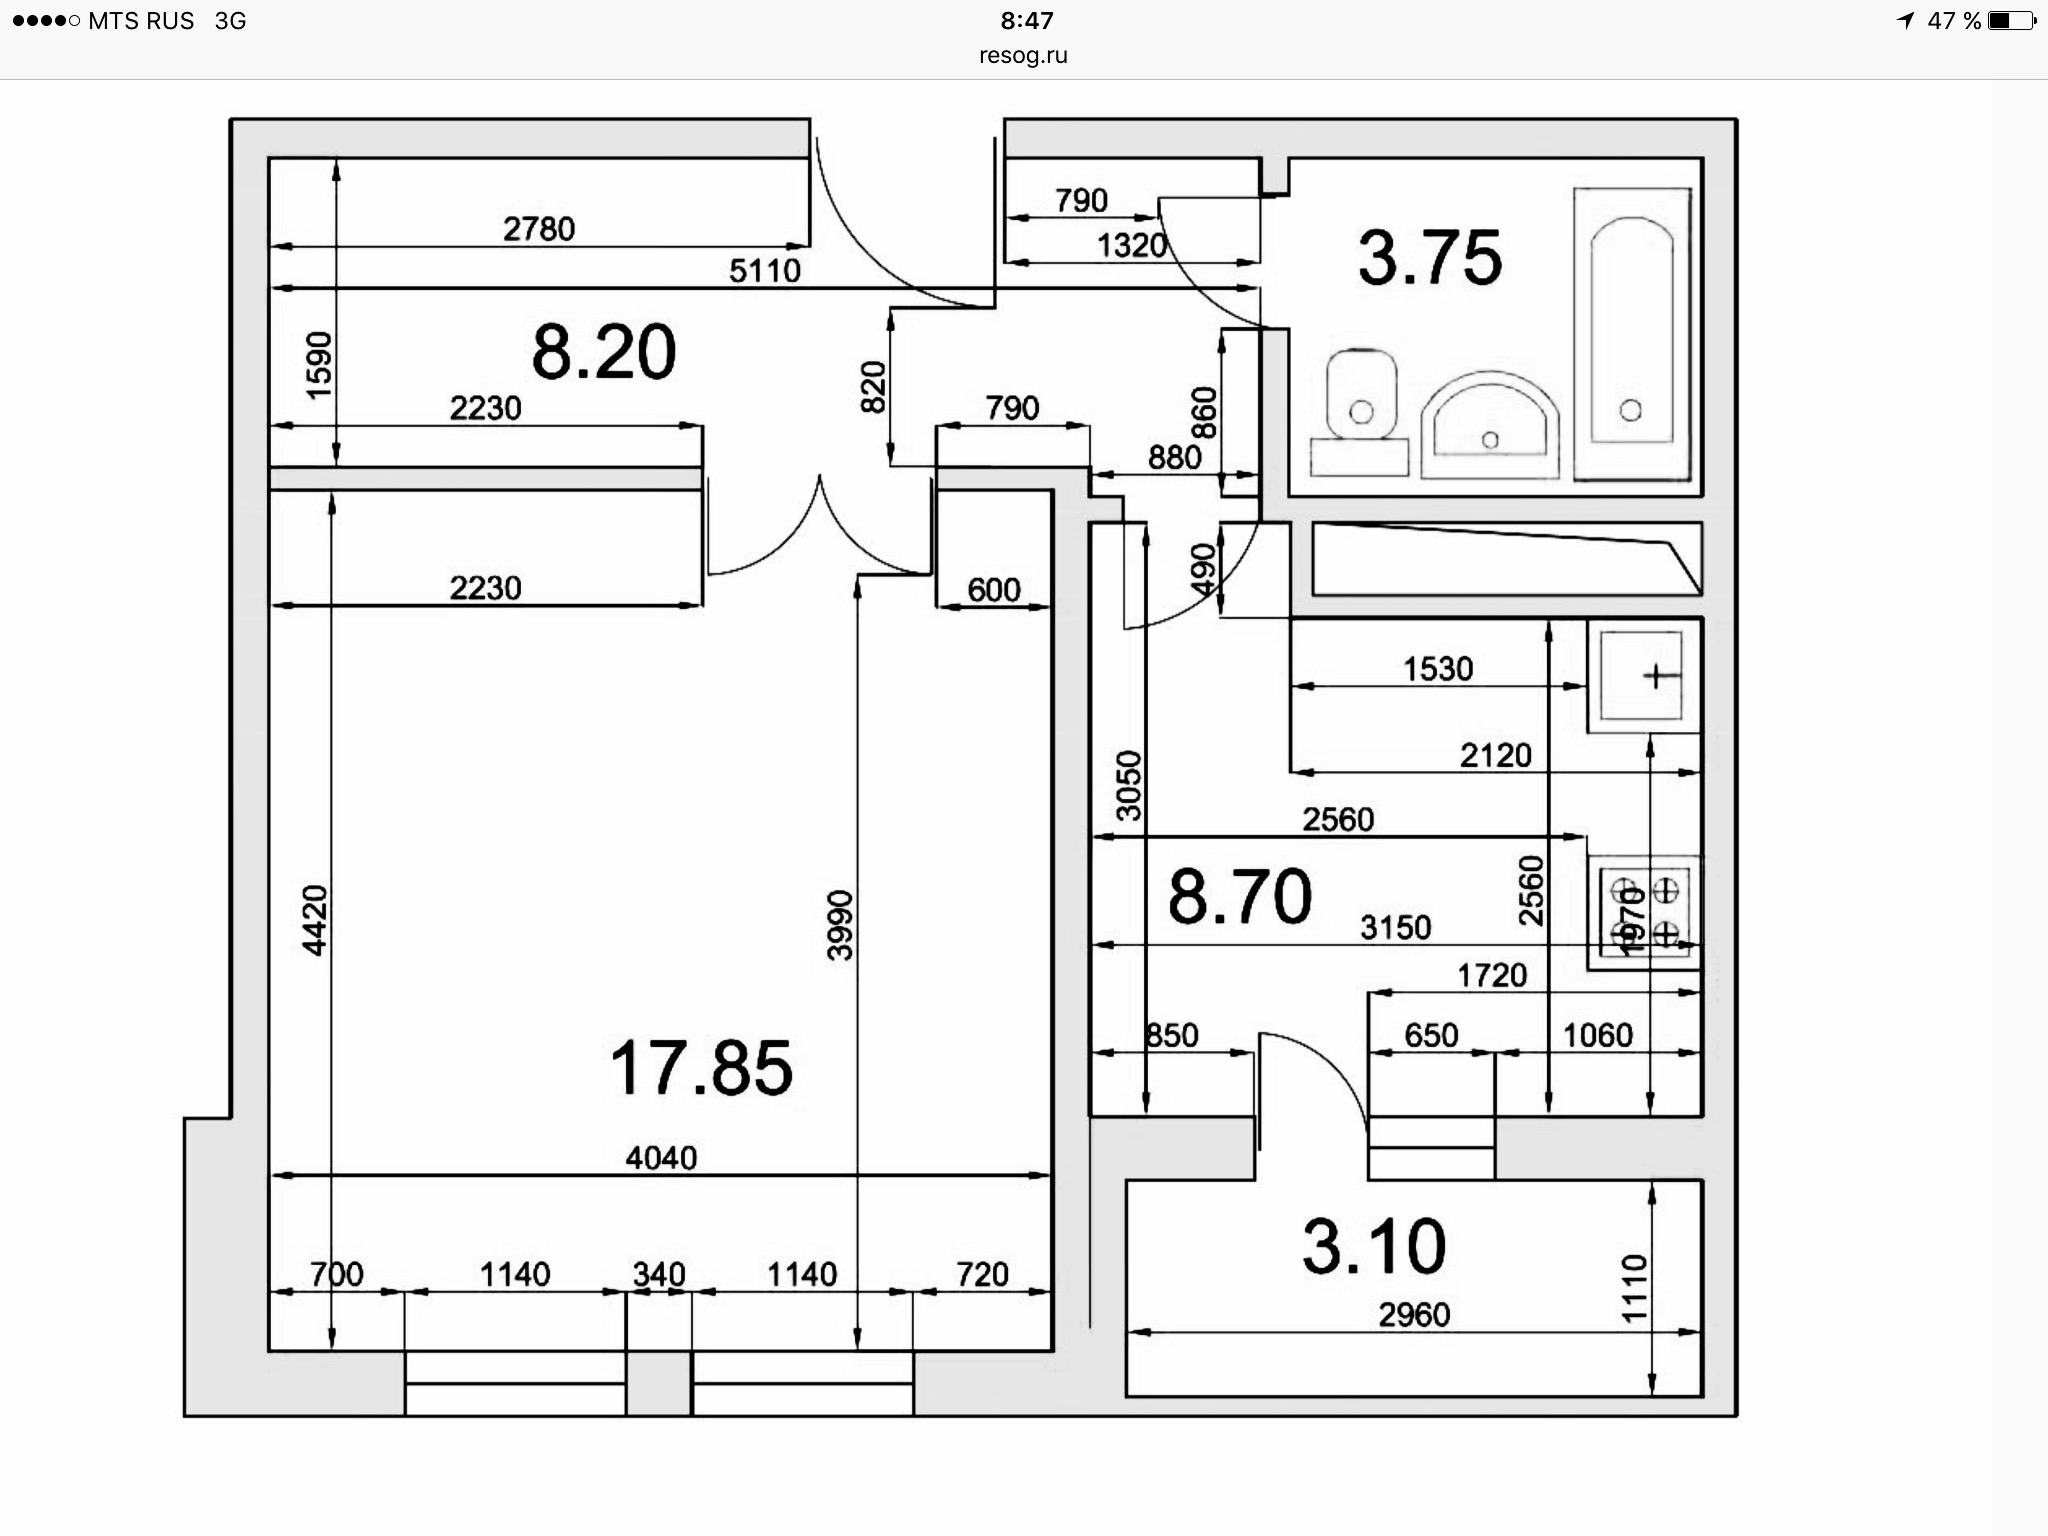 Размеры однушки. Планировка ГМС-1 однокомнатная. ГМС-1 планировка 2 комнатная квартира с размерами. Планировка ГМС-2001 однокомнатная. ГМС-2001 планировка 2-х комнатная квартира с размерами.